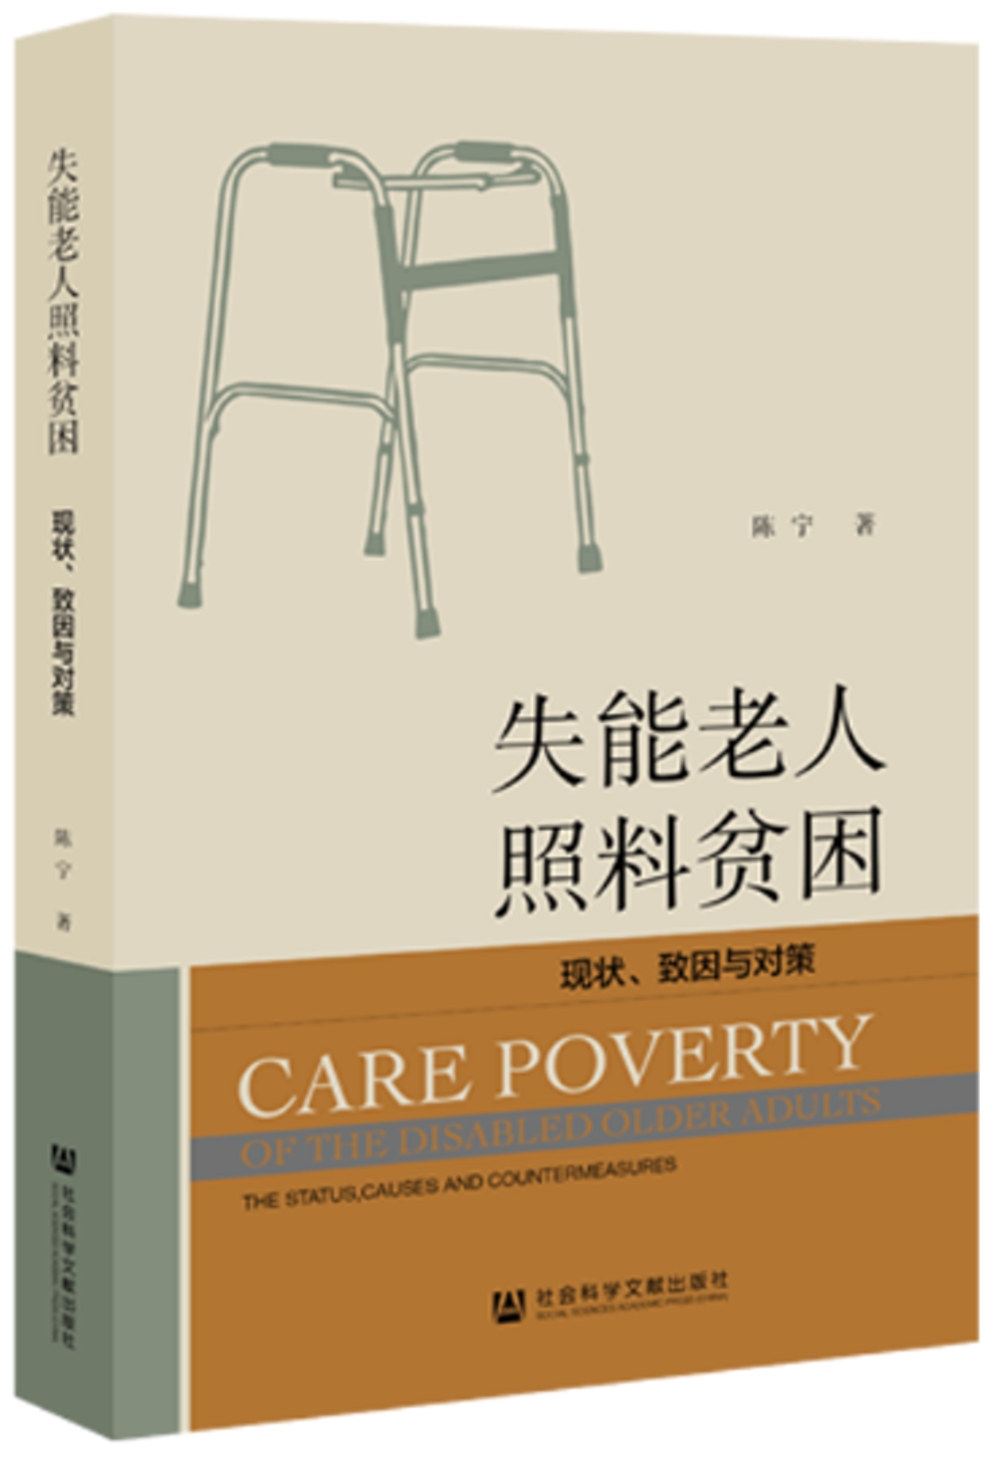 失能老人照料貧困：現狀、致因與對策